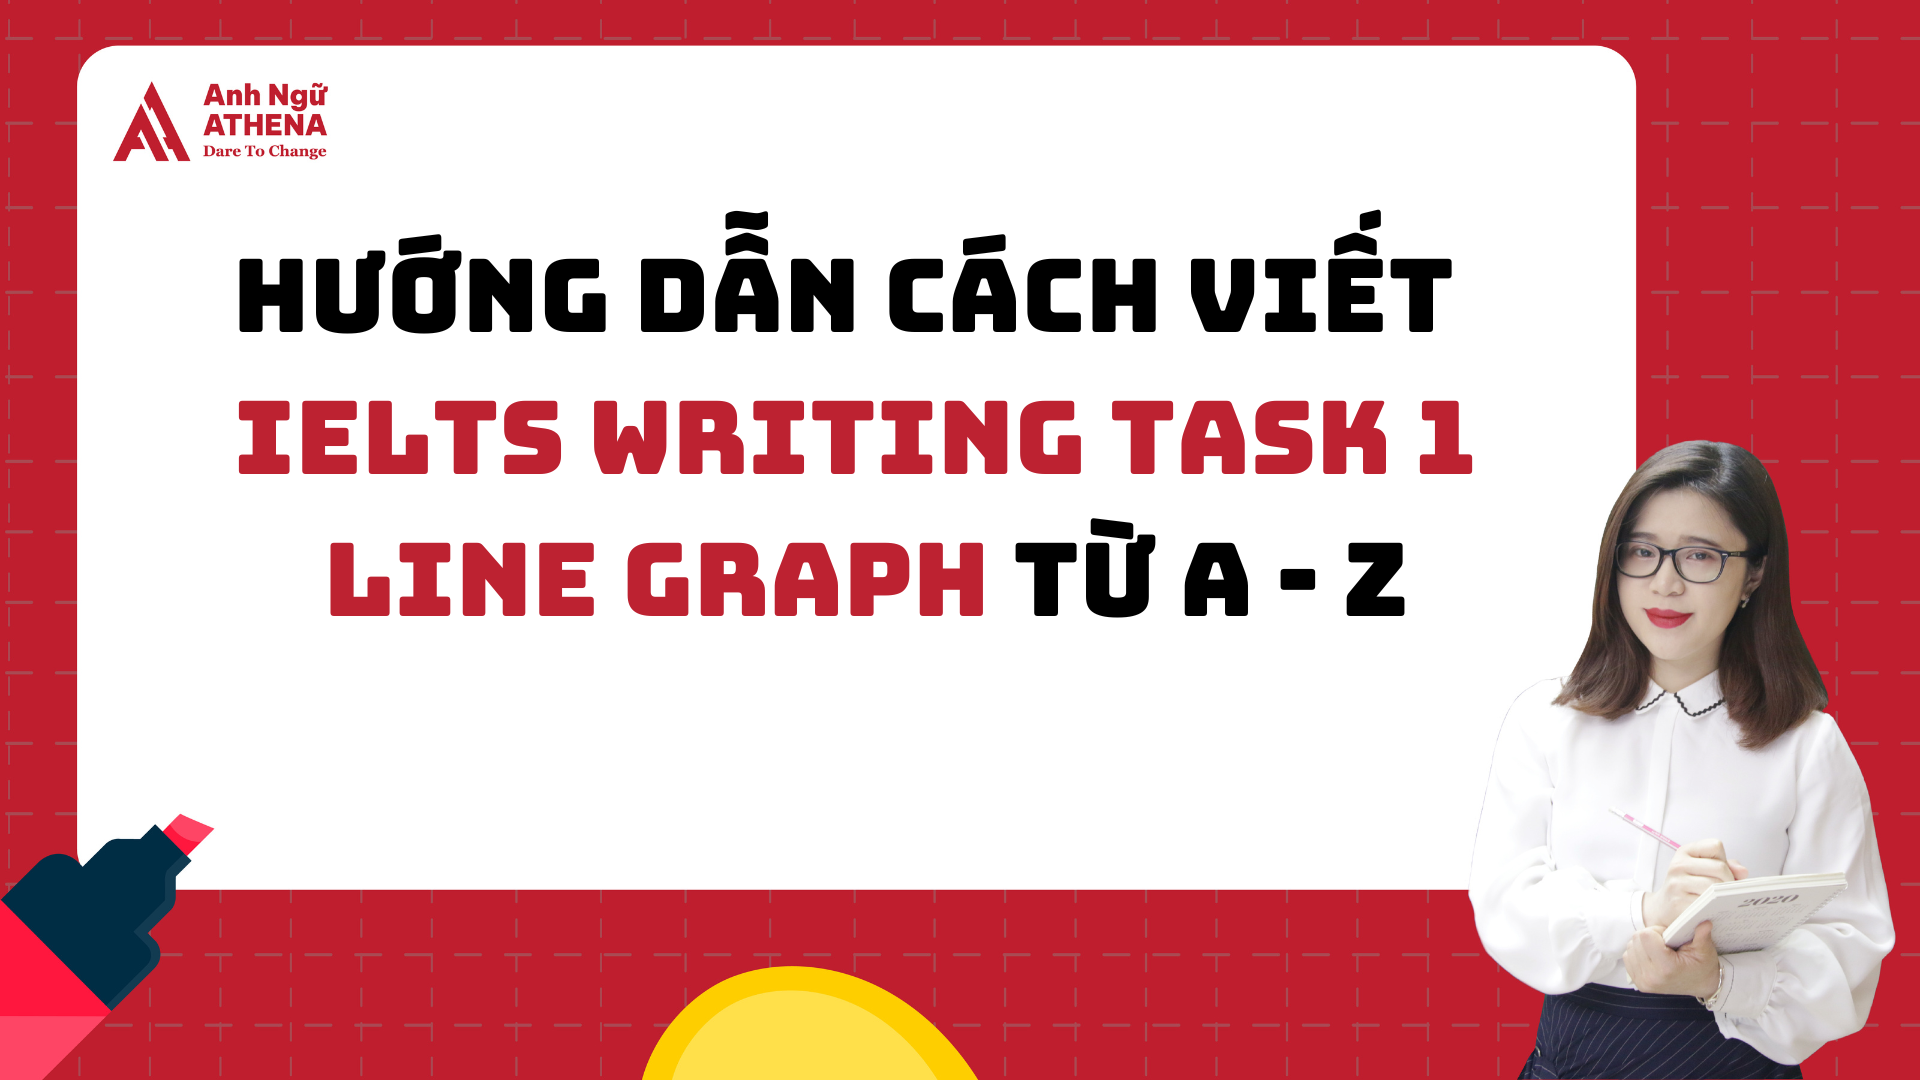 Hướng dẫn cách viết Writing Task 1 Line graph từ A đến Z